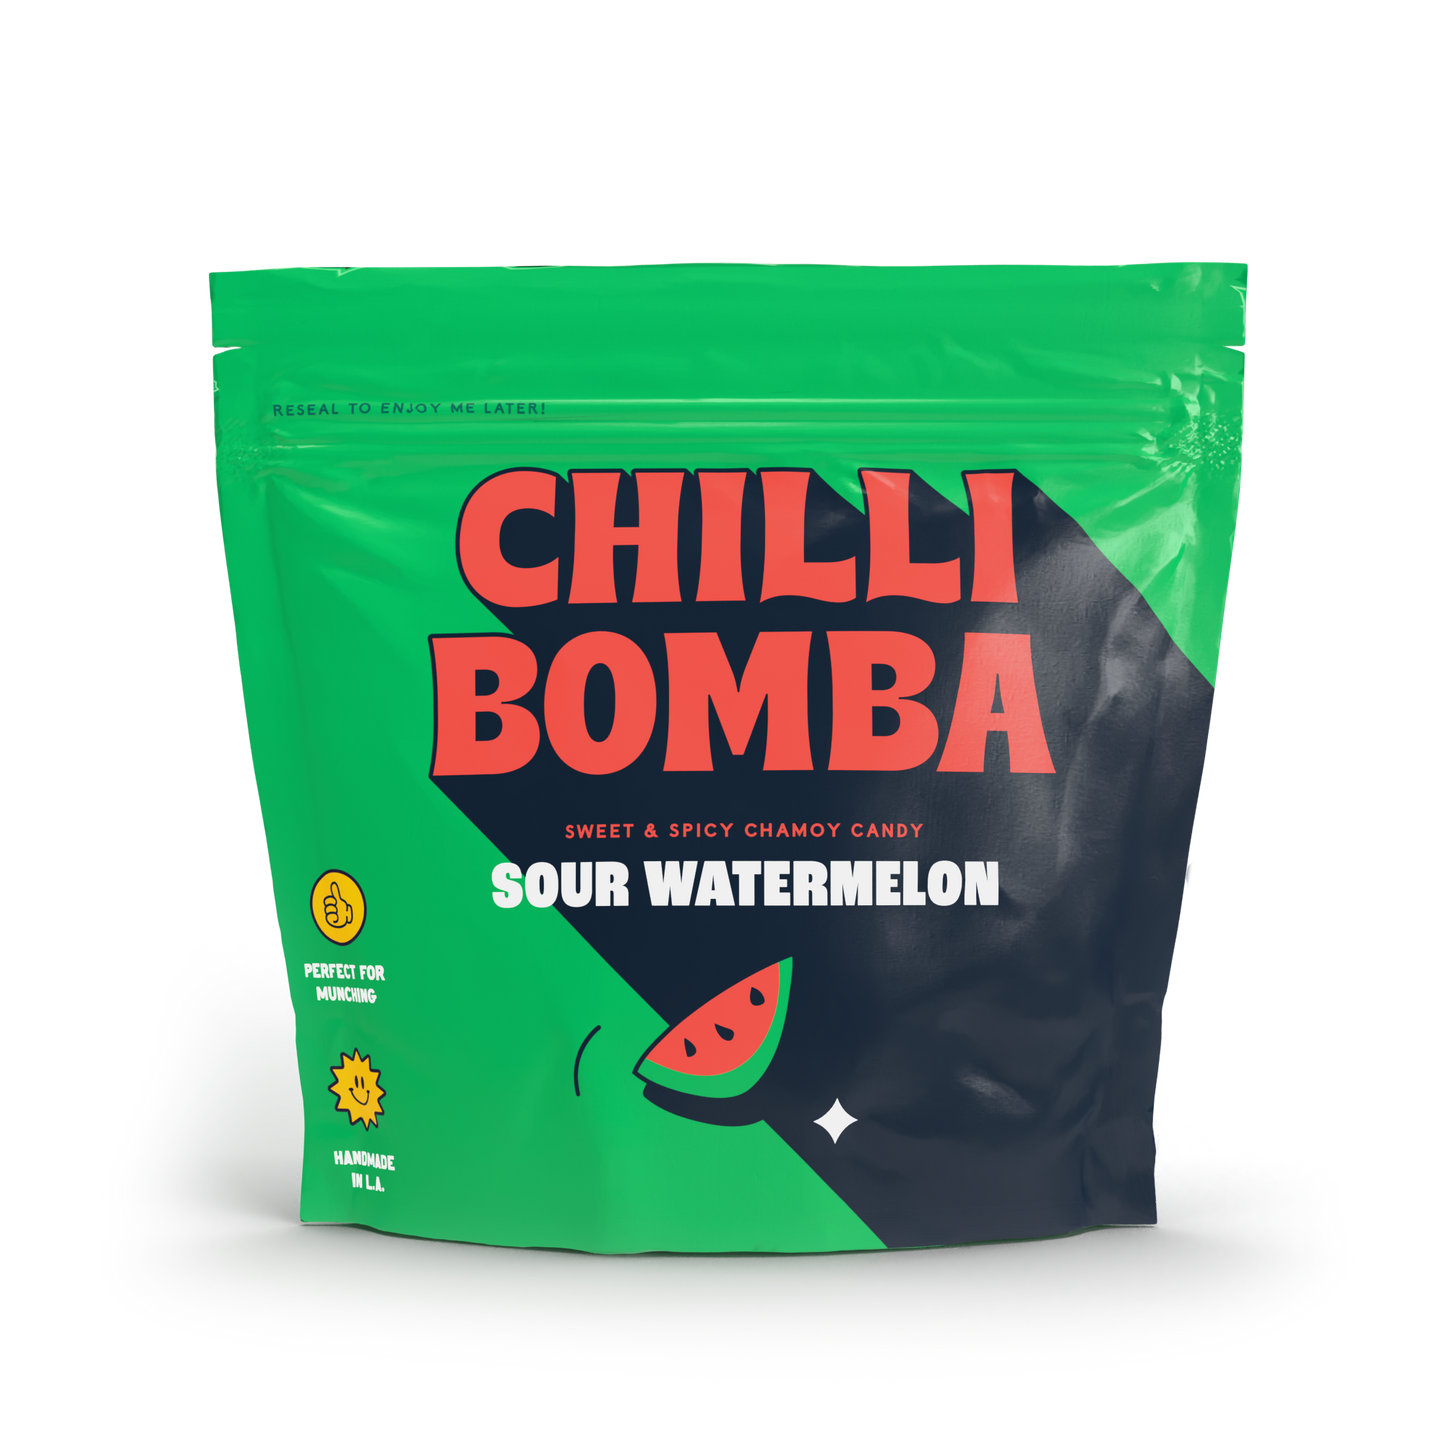 Chilli Bomba Sour Watermelon 8oz